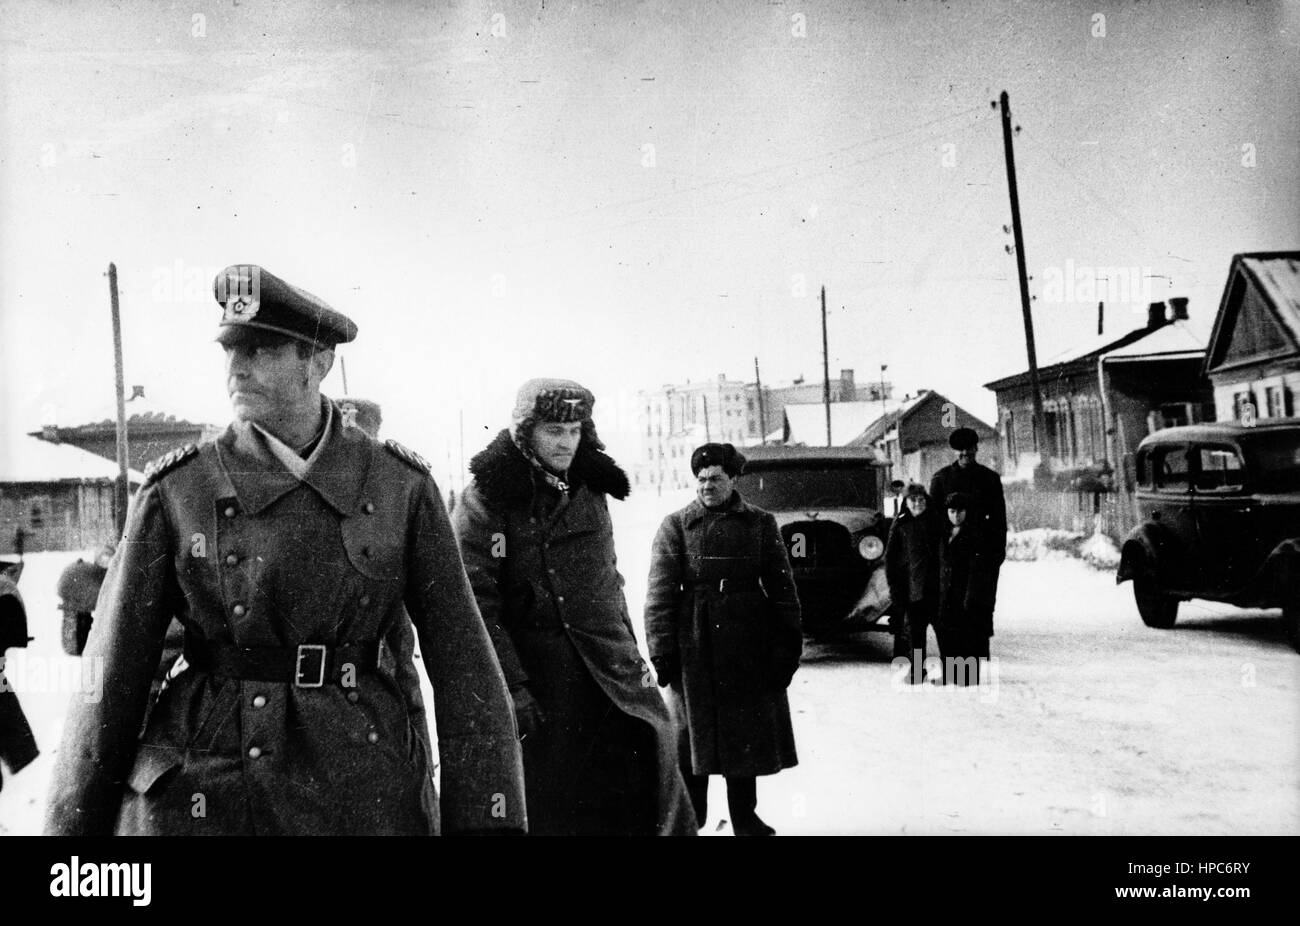 Il maresciallo di campo Friedrich Paulus (l), comandante supremo dell'esercito tedesco del 6th, viene catturato dall'esercito rosso durante la battaglia di Stalingrado, in Unione Sovietica, il 31 gennaio 1943. Fotoarchiv für Zeitgeschichte | usage worldwide Foto Stock